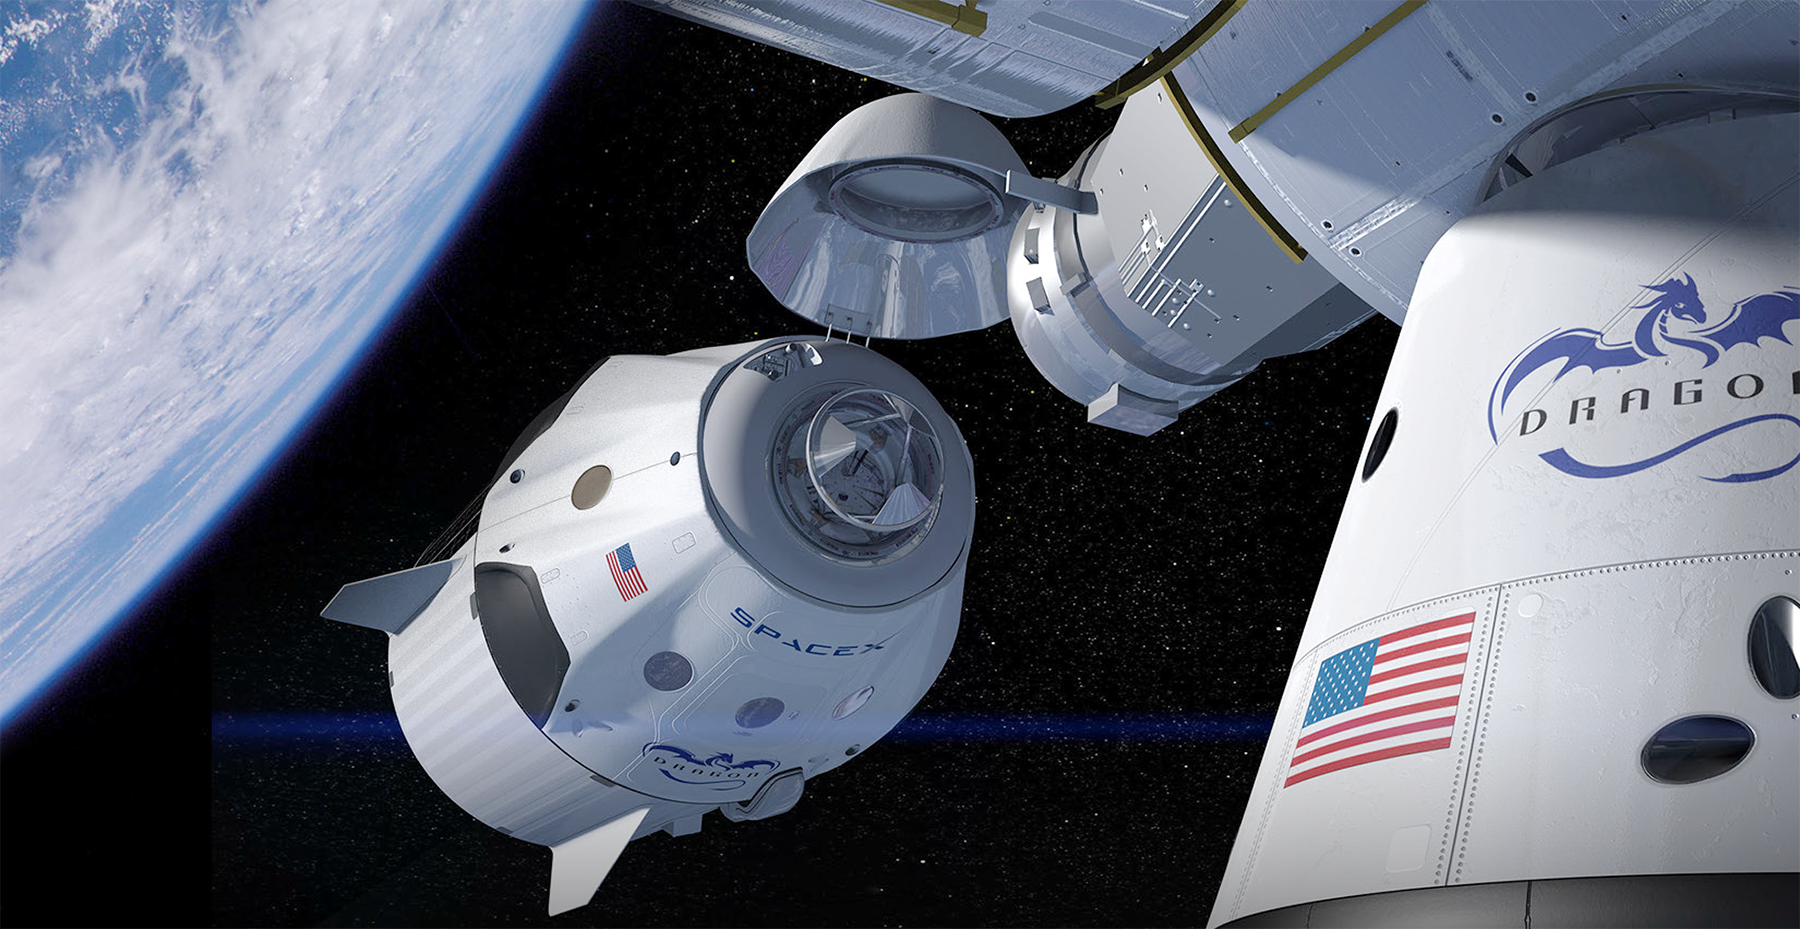 Raumkapsel von SpaceX hat an der ISS angedockt | Cockpit